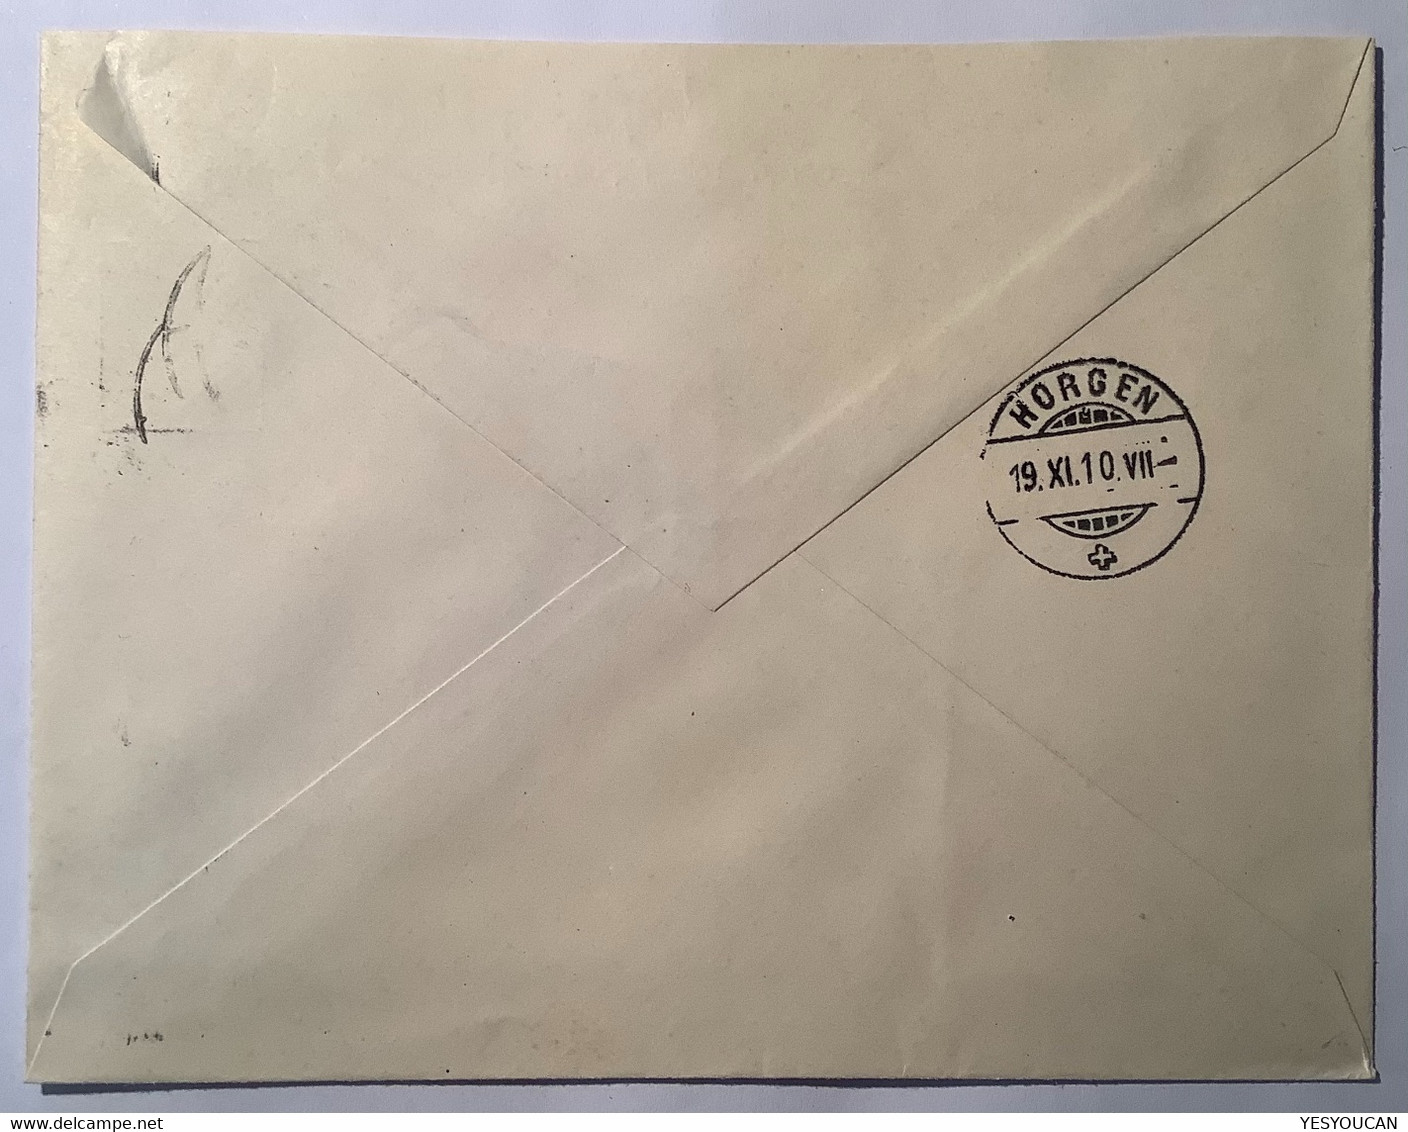 Privatganzsache: Hasler Bern Telegraphen Werk 1910 Helvetia Umschlag (telegraph Telegraphie Schweiz Postal Stationery - Postwaardestukken